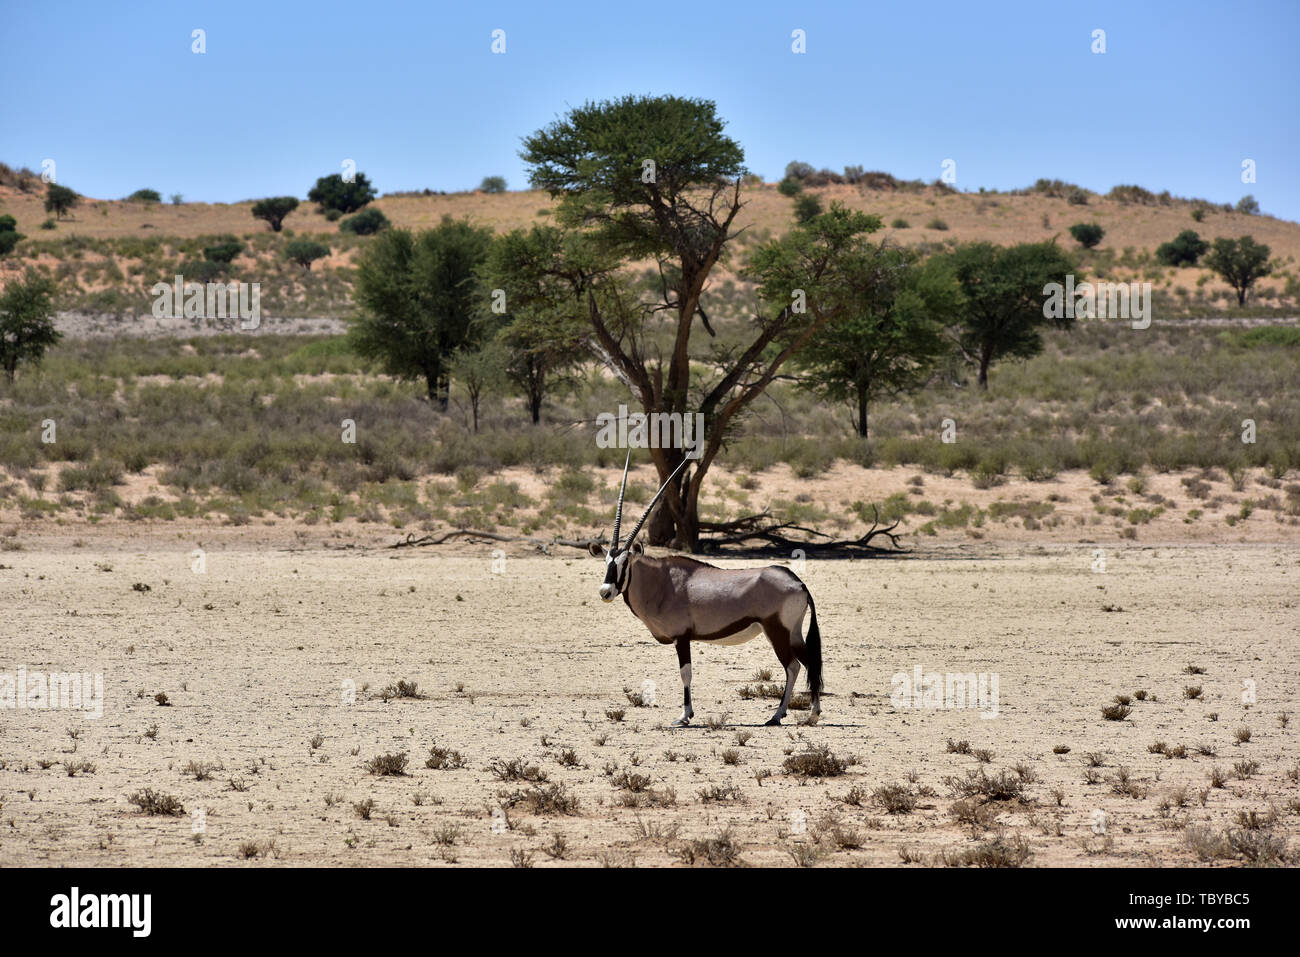 (L'antilope oryx Oryx gazella) dans le Parc National de Kgalagadi, prise le 25.02.2019. Les deux cornes et masque noir sont typiques de ce jusqu'à 200 kg d'antilopes. Le Kgalagadi Transfrontier National Park a été créé en 1999 par fusion de l'Afrique du Sud le parc national de Kalahari Gemsbok et le parc national de Gemsbok au Botswana et est une réserve naturelle transfrontalière dans le Kalahariwssste avec une superficie d'environ 38 000 kilomètres carrés. Le parc est bien connu pour les lions, qui sont souvent l'on y trouve, mais aussi pour de nombreux autres animaux sauvages qui vivent ici. Photo : Matthias Banque D'Images